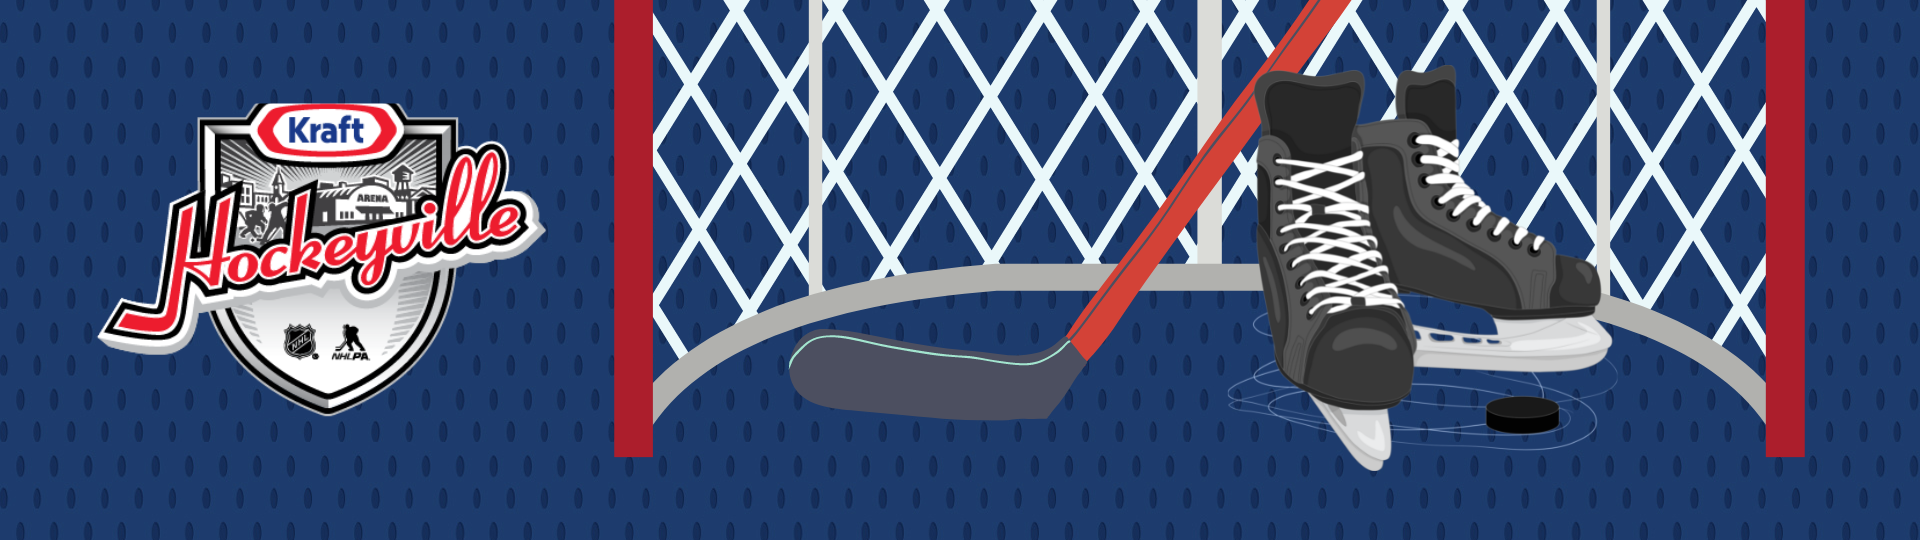 Kraft Hockeyville logo on blue background with hockey net, skates and hockey stick